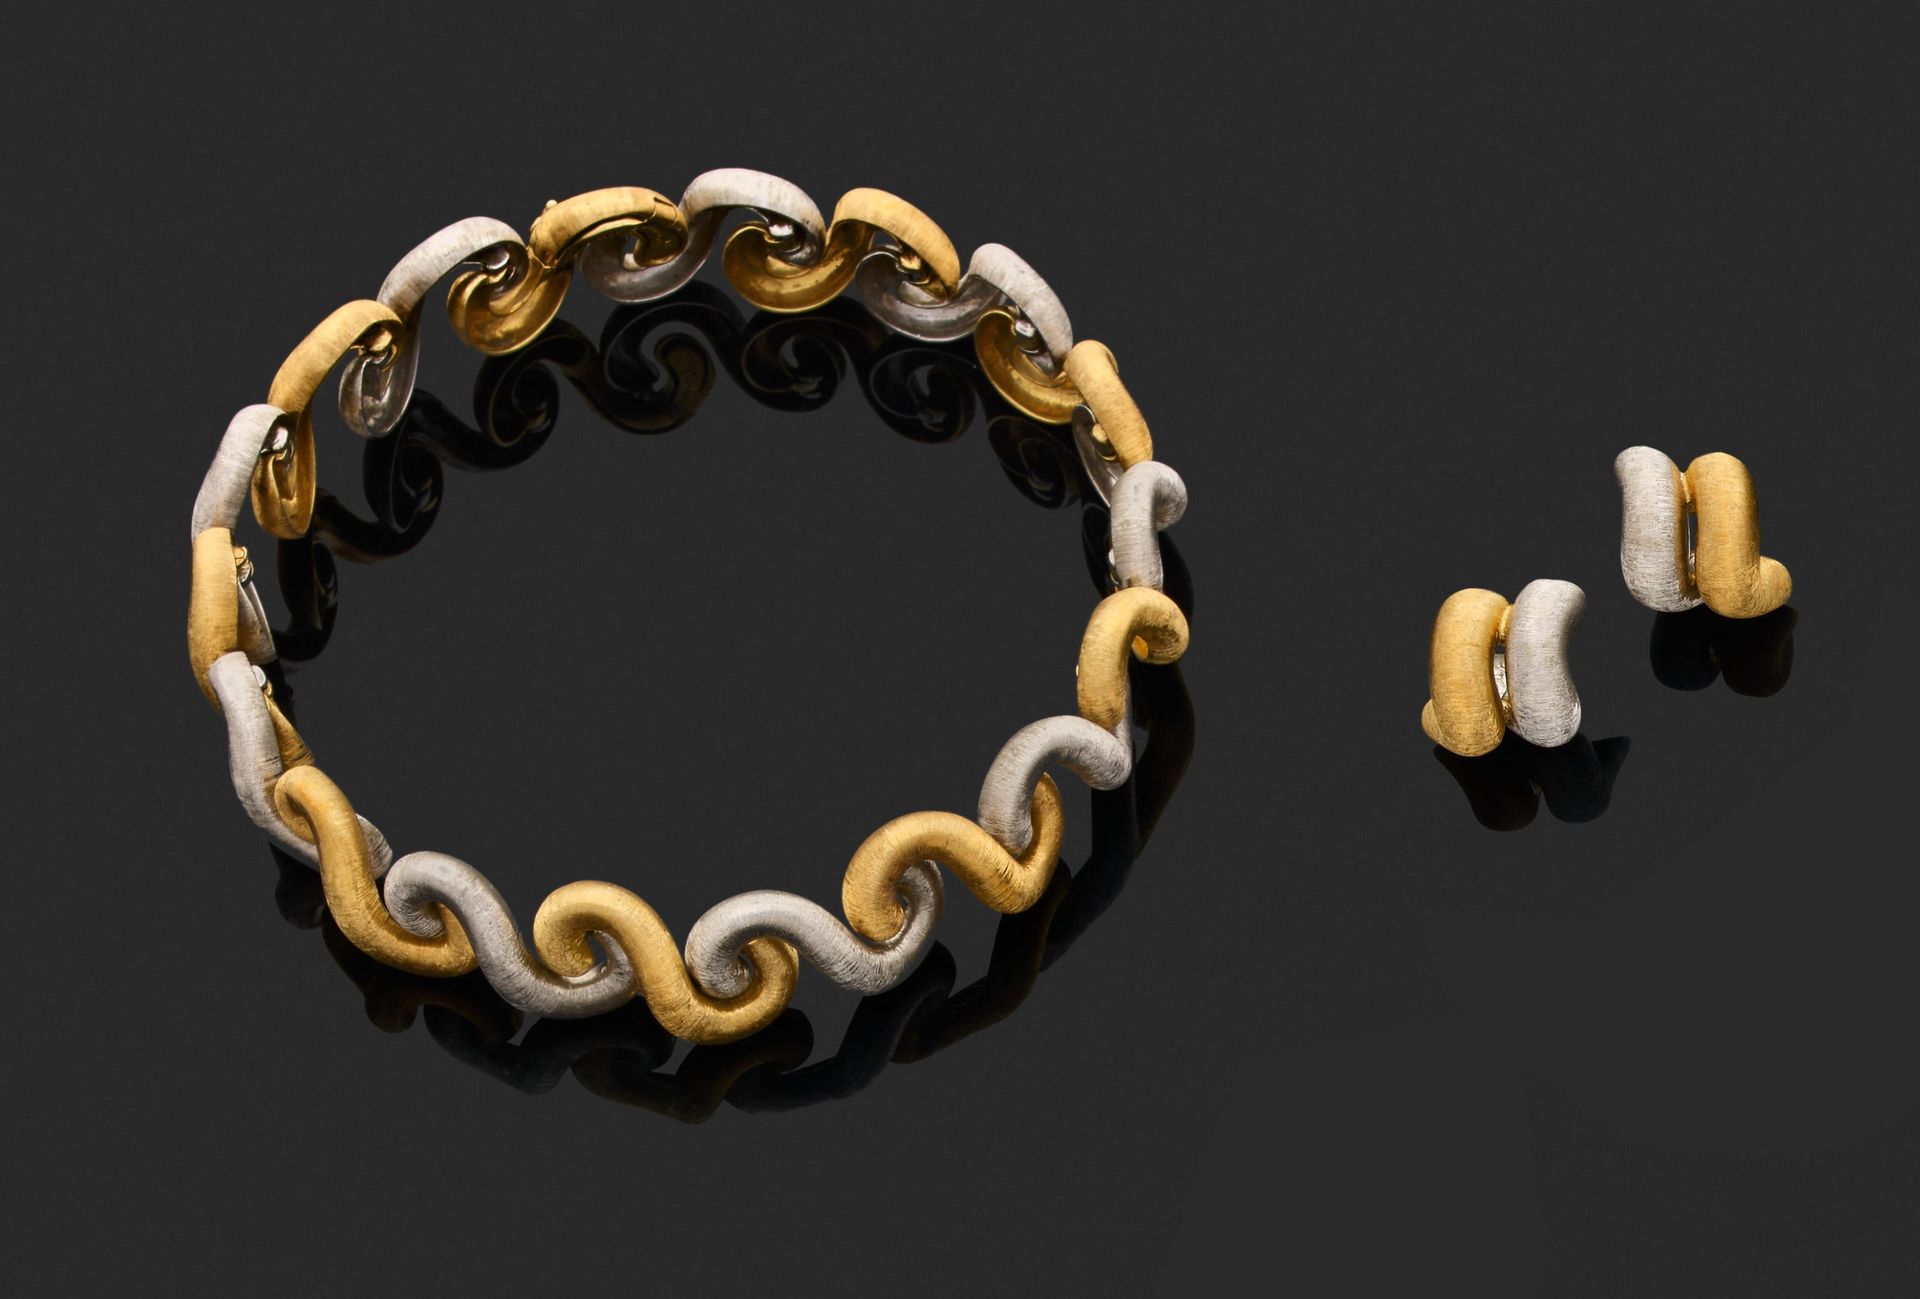 Null 布凯拉蒂 
项链和一对耳环 

750千分之一金双色，雕刻并镶嵌有 "波浪 "图案。 
已签名。适用于穿孔耳朵的系统。

项链长33厘米。
耳环的高度&hellip;